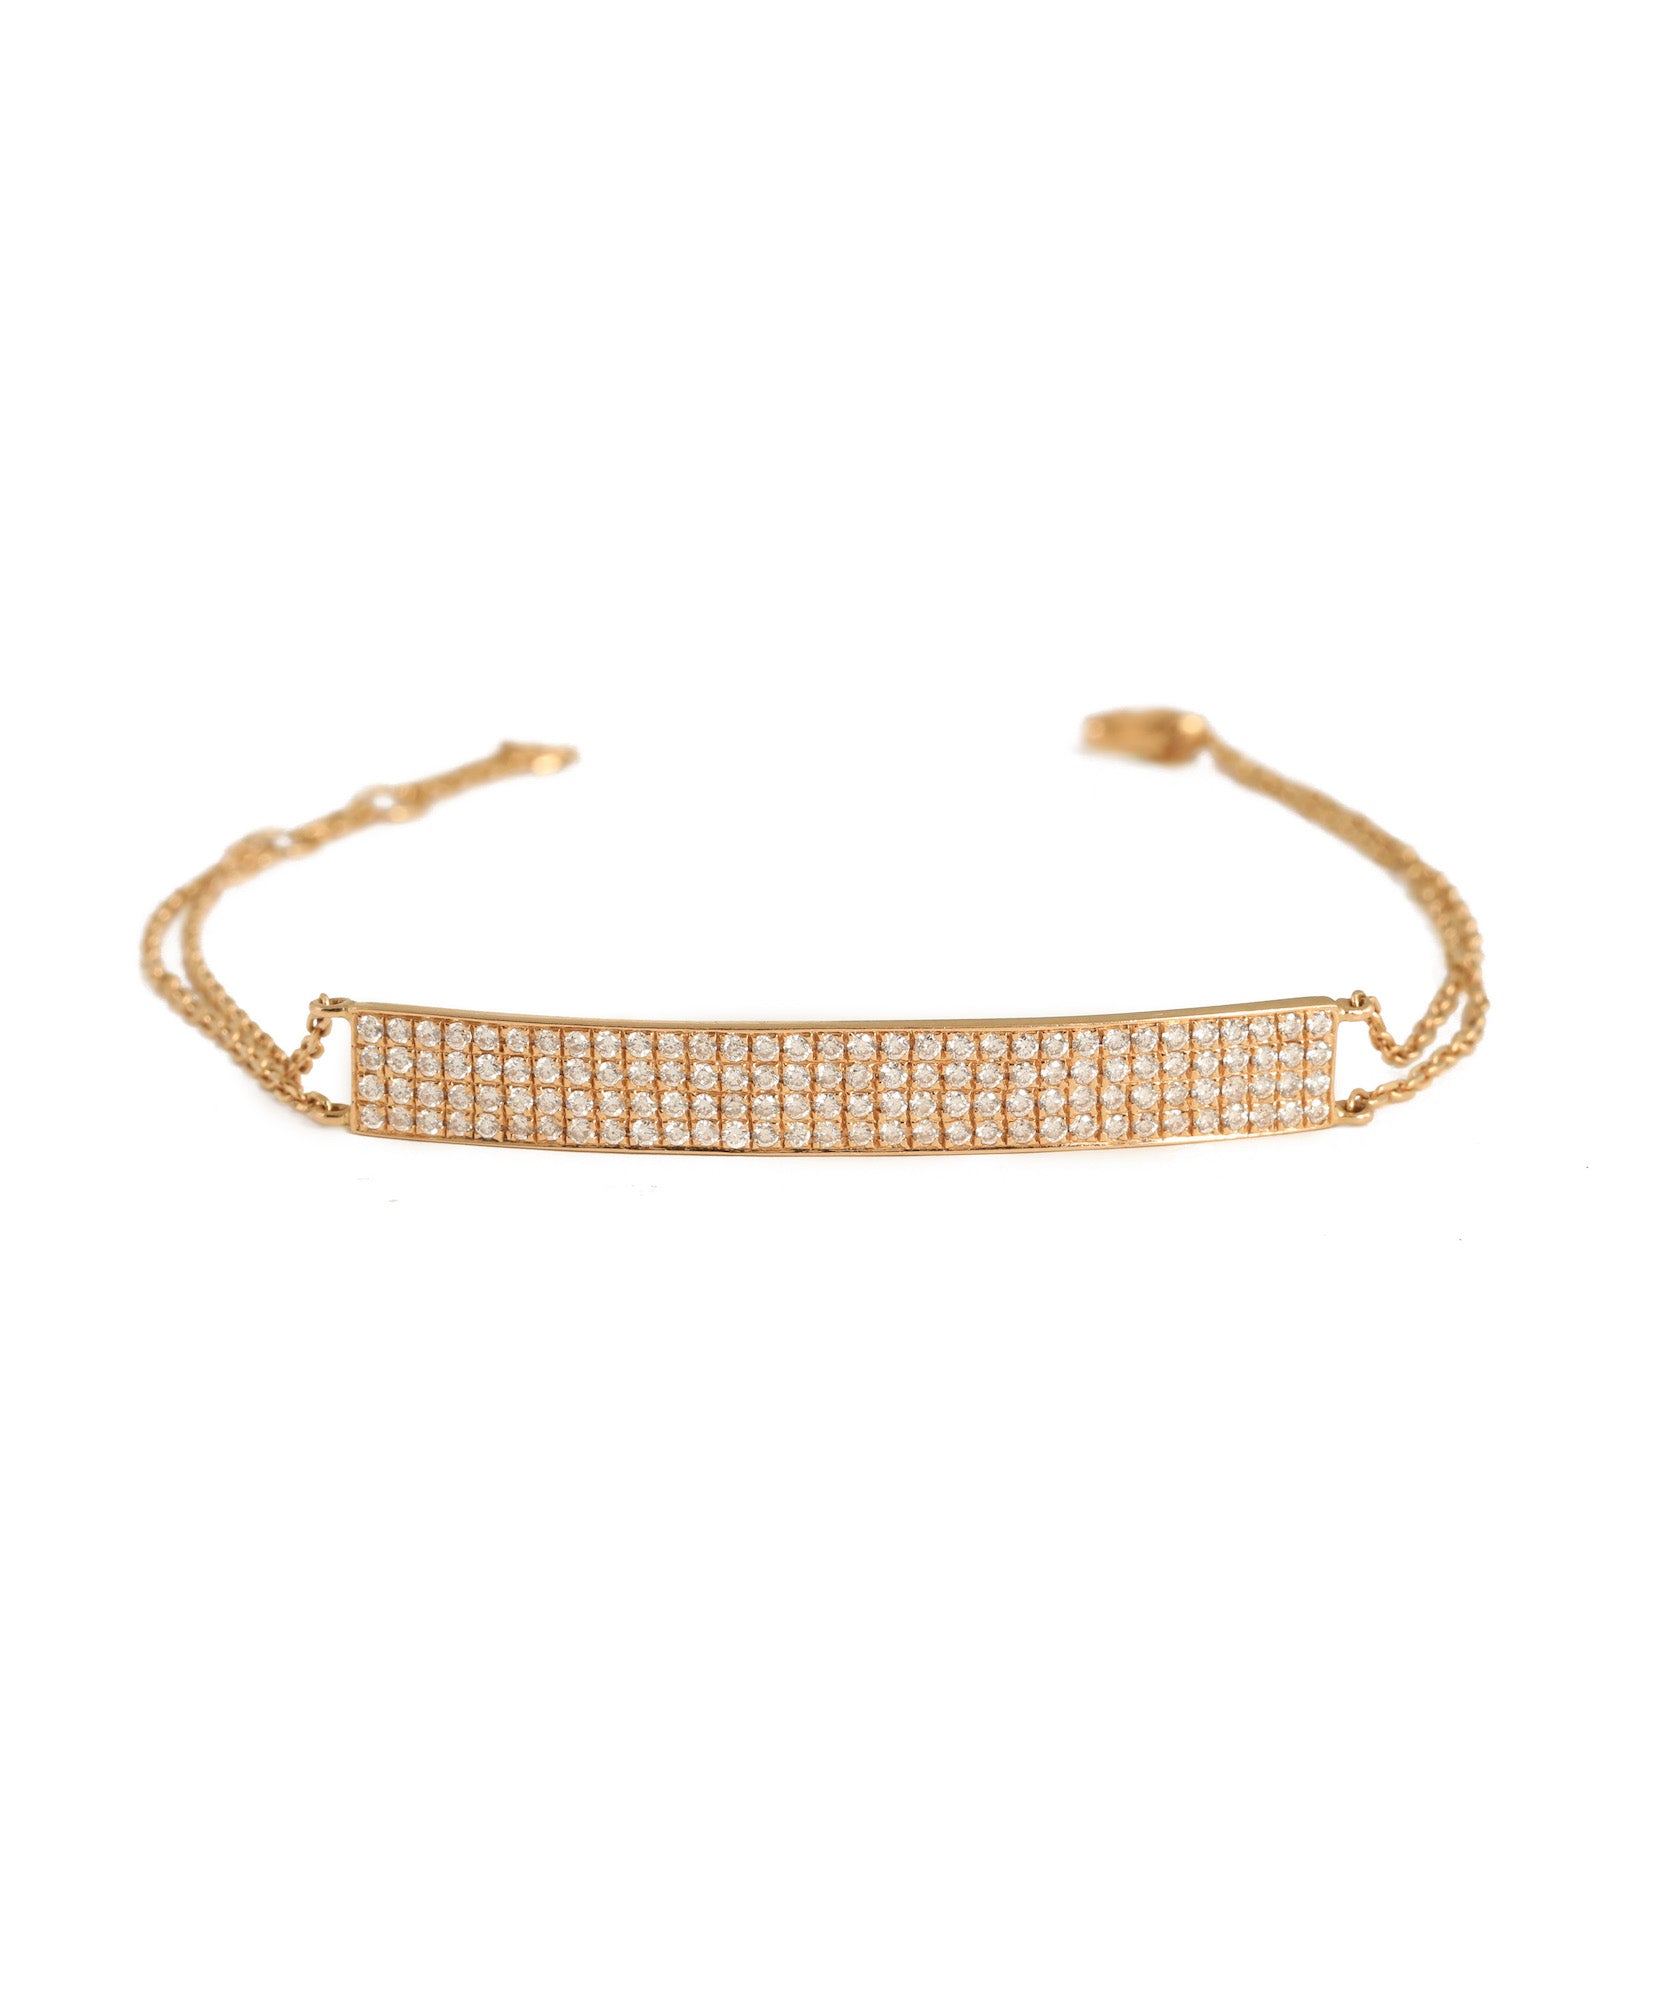 J by boghossian, diamond, gold, bracelet, plate